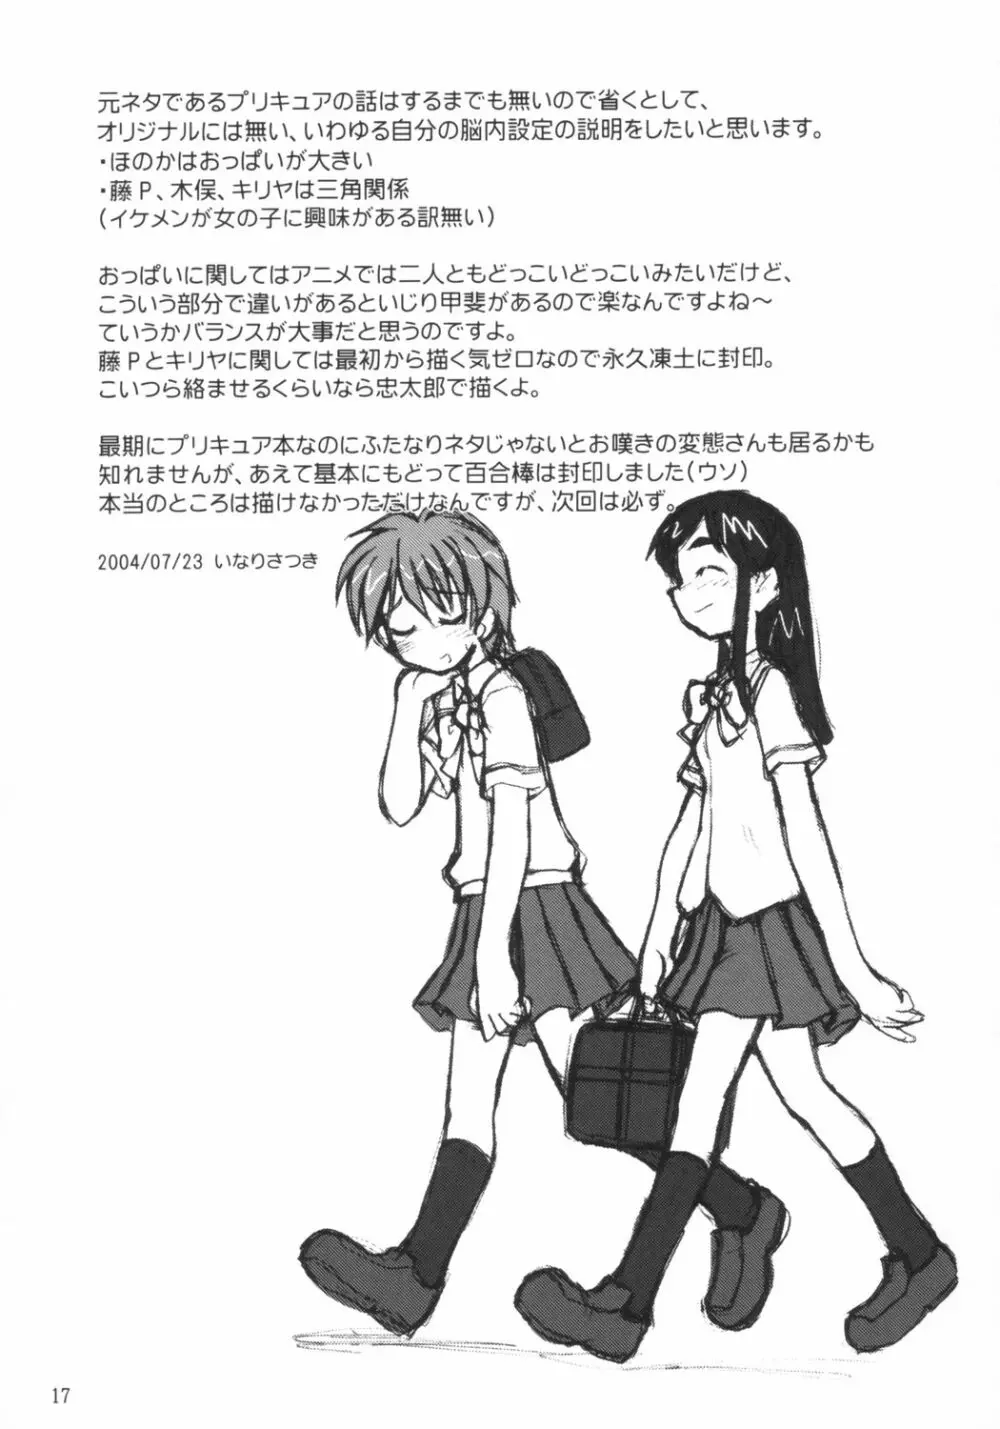 なぎさの『・・・』NAGISA NO KAGIKAKKO 16ページ